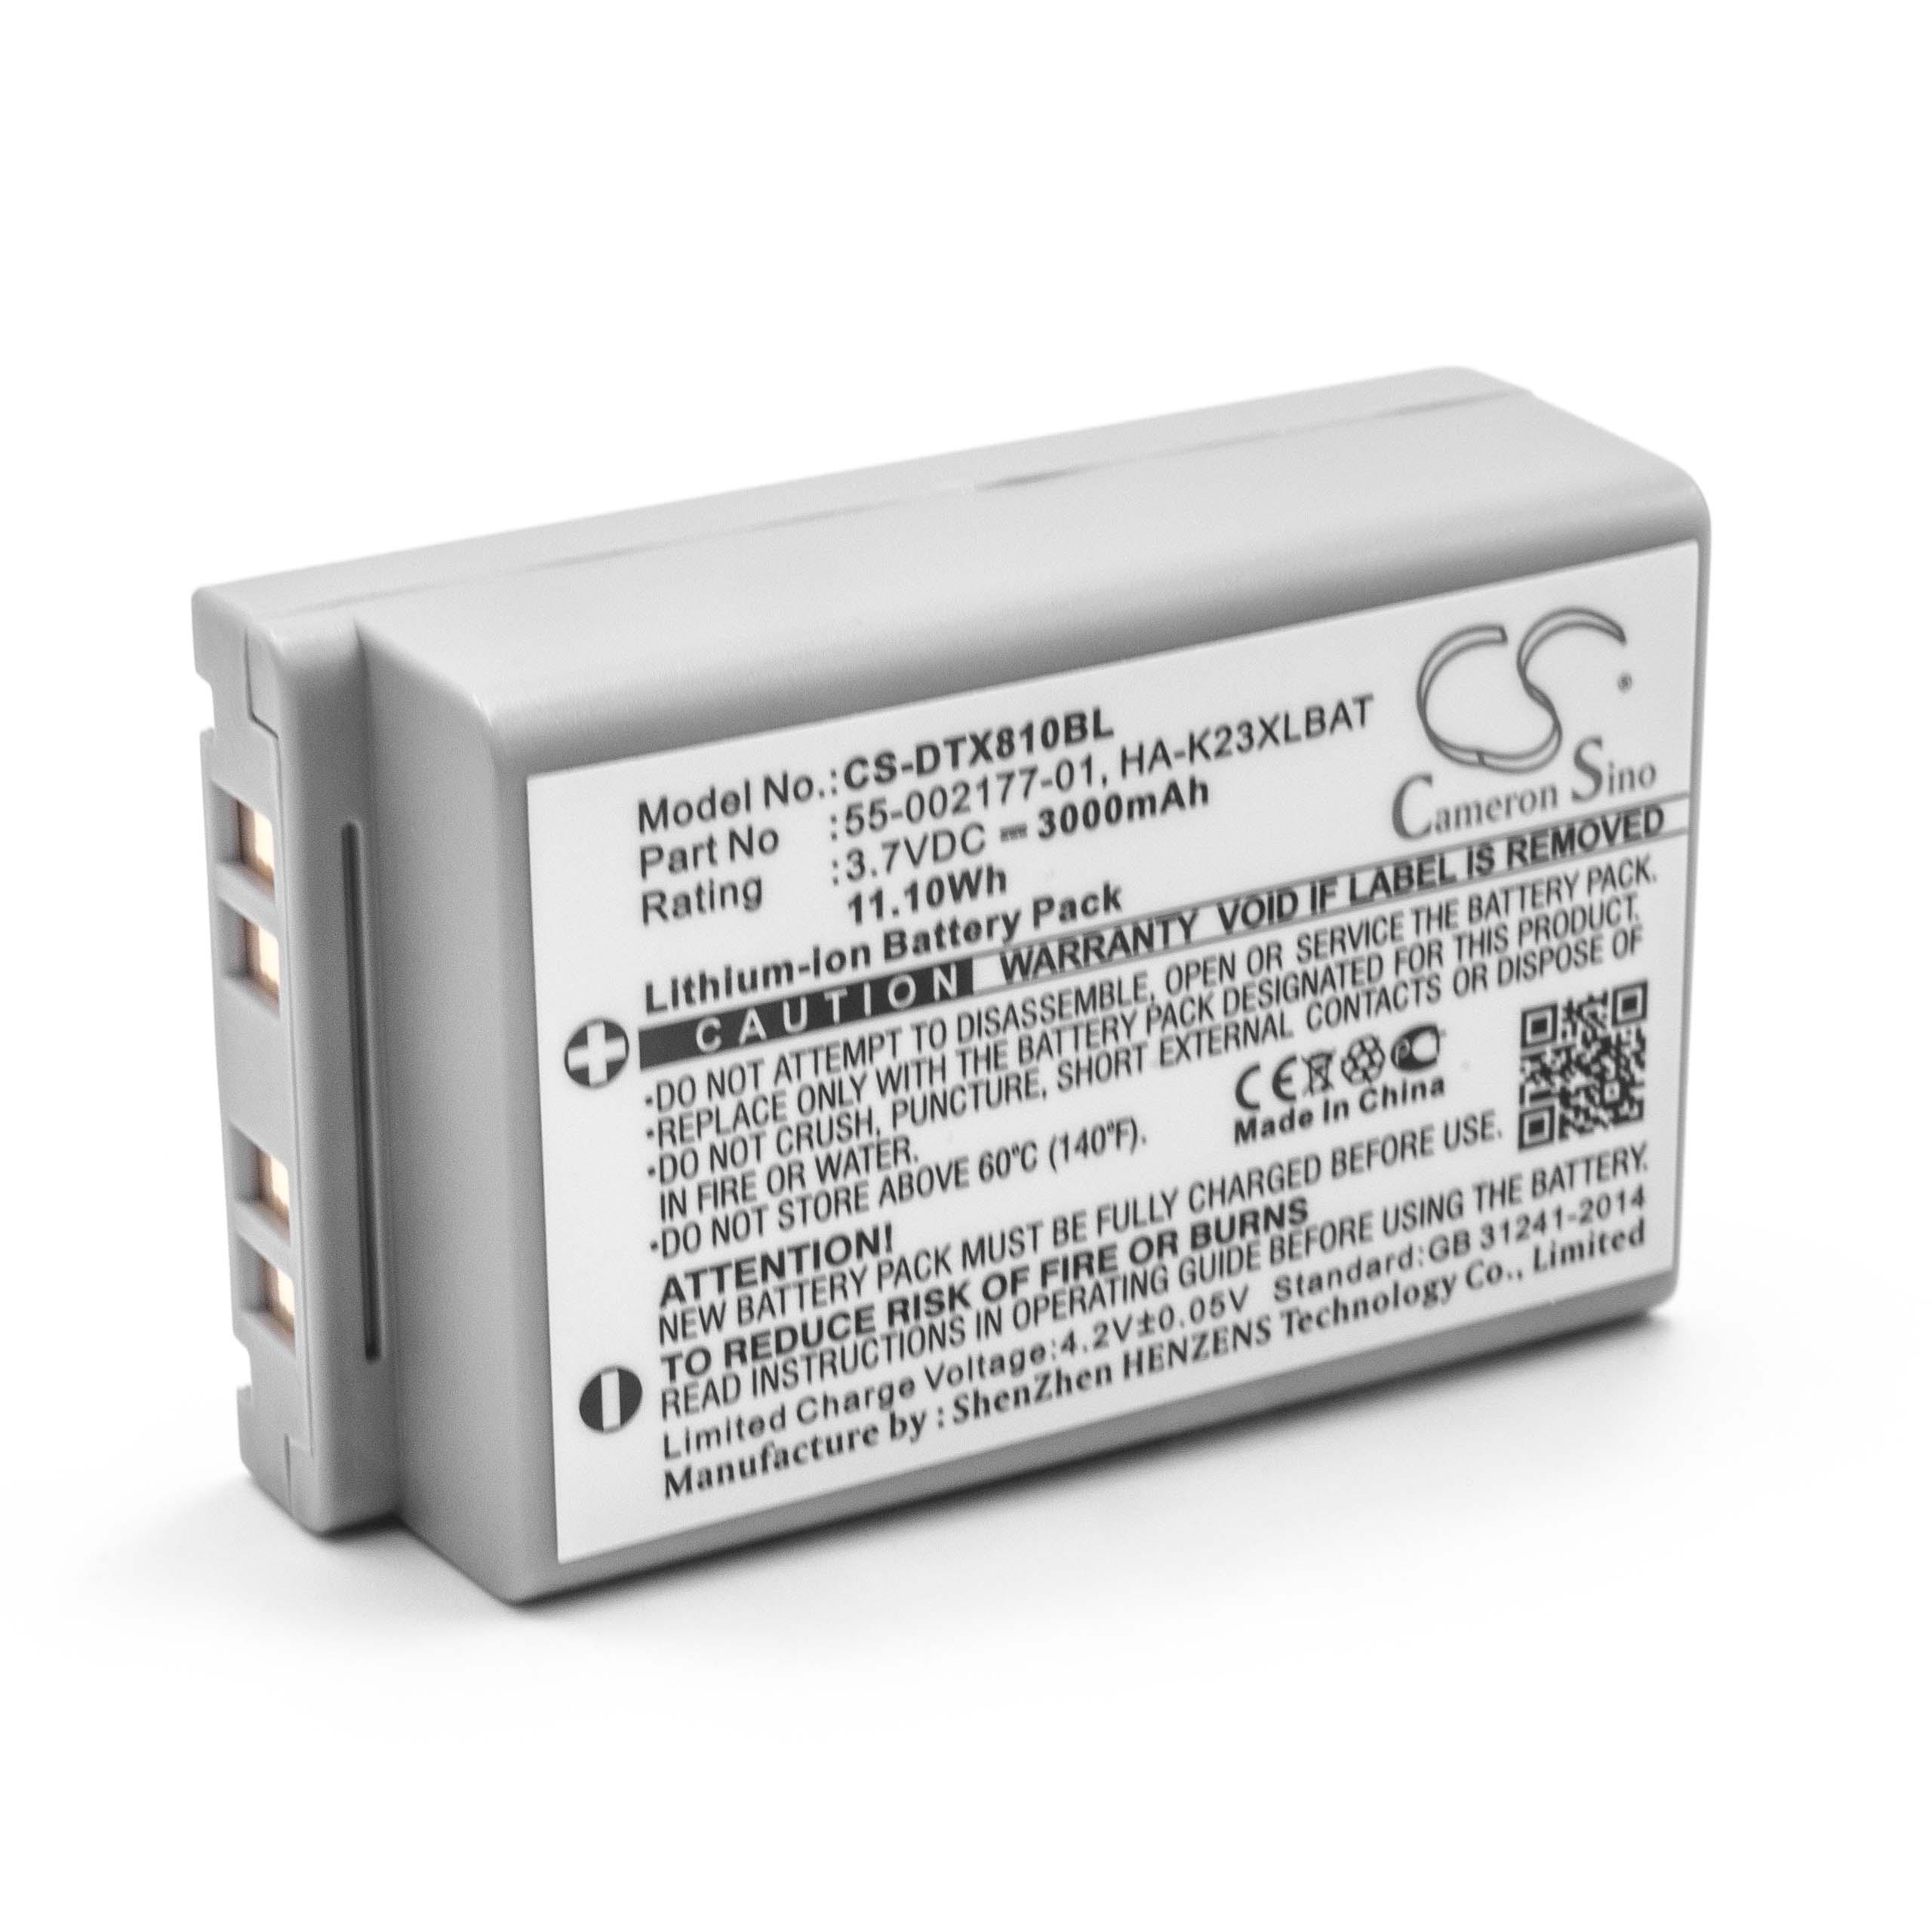 Batterie remplace Casio HA-K23XLBAT, 55-002177-01 pour scanner de code-barre - 3000mAh 3,7V Li-ion